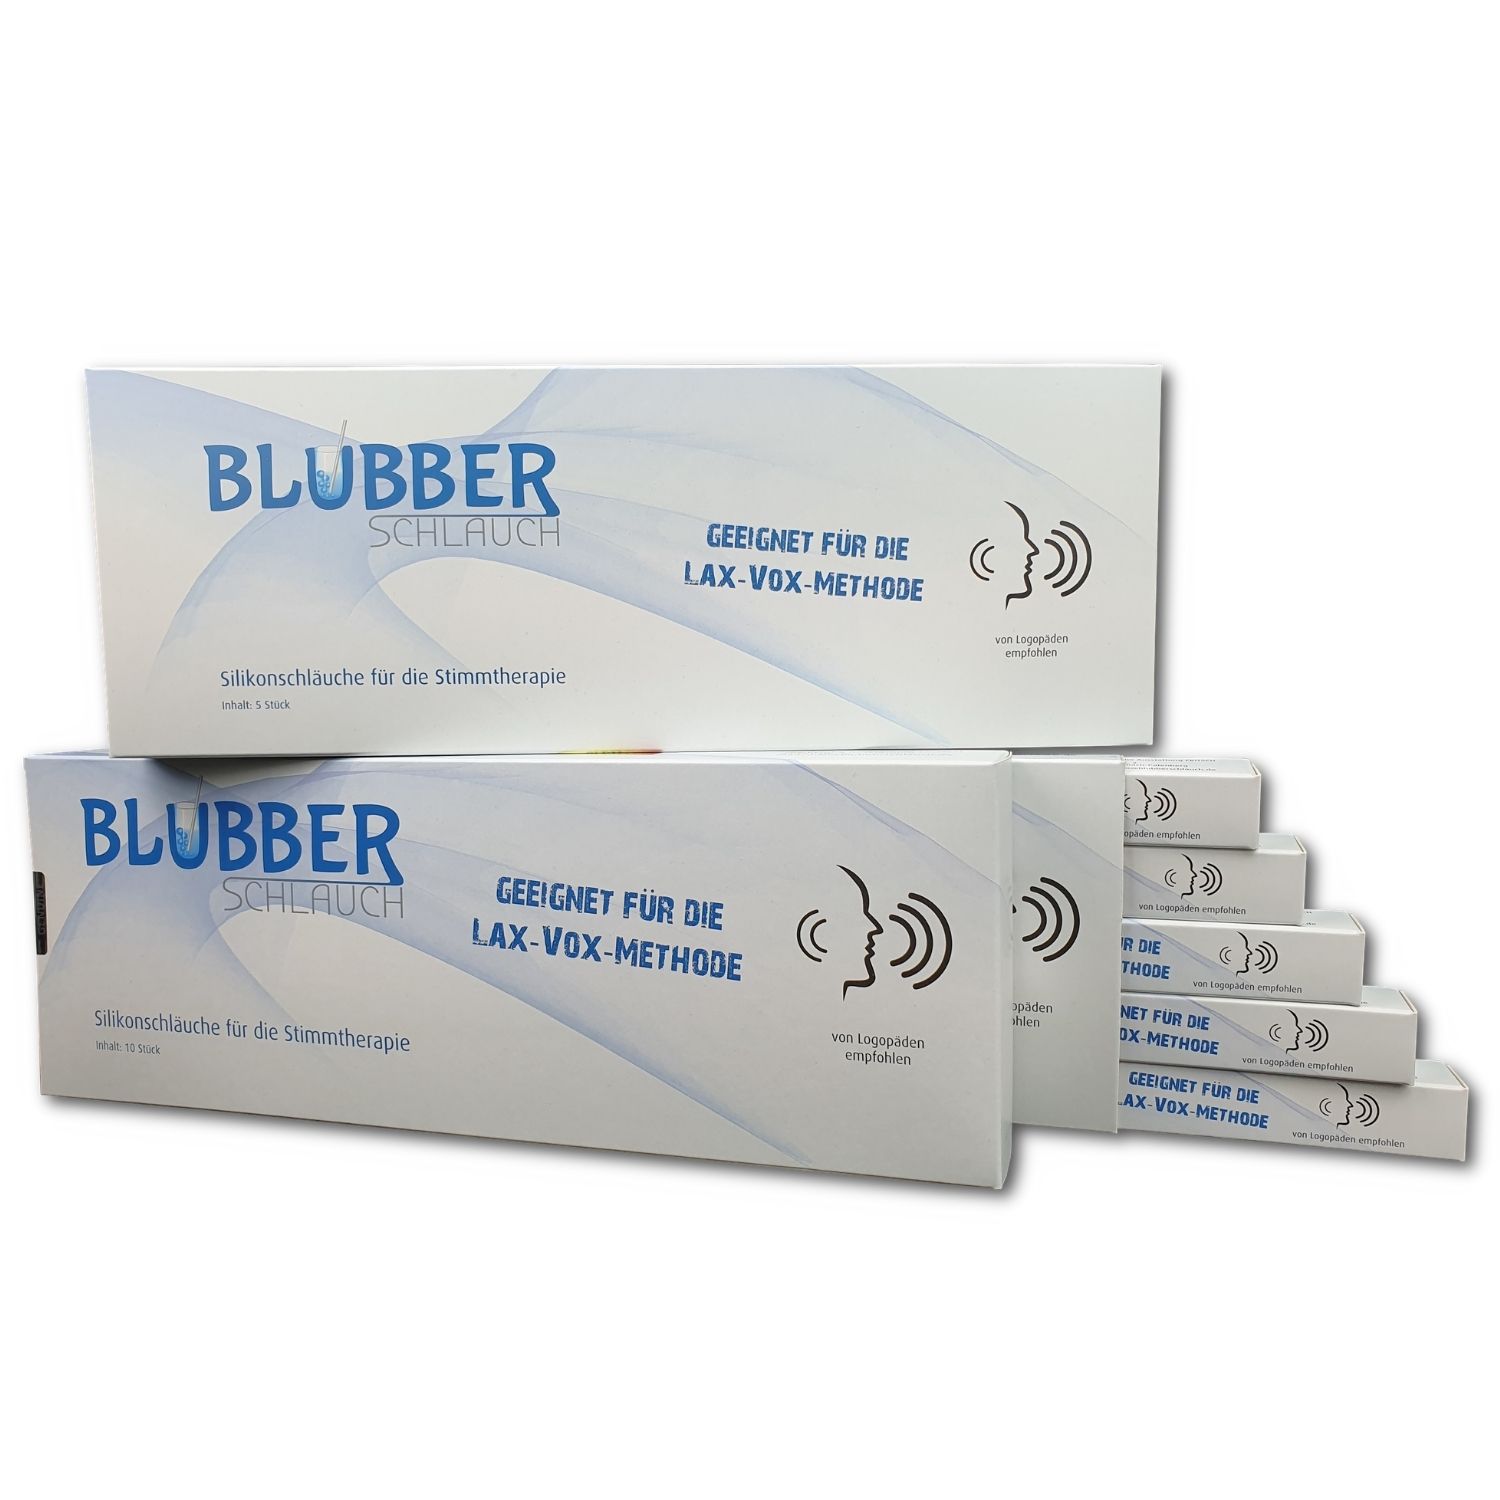 Blubberschlauch - Silikonschlauch für die Stimmtherapie, 25er Pack